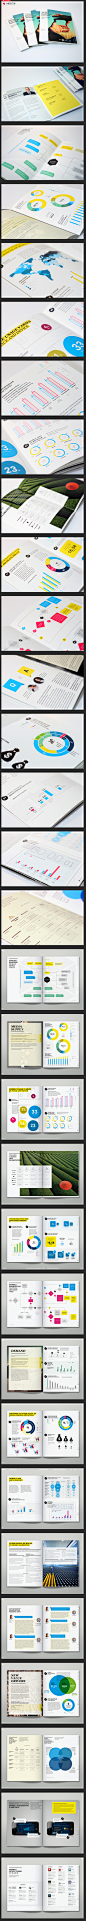 清新的表格统计类画册设计-图麦格纳媒体经济报告[32P]-平面设计